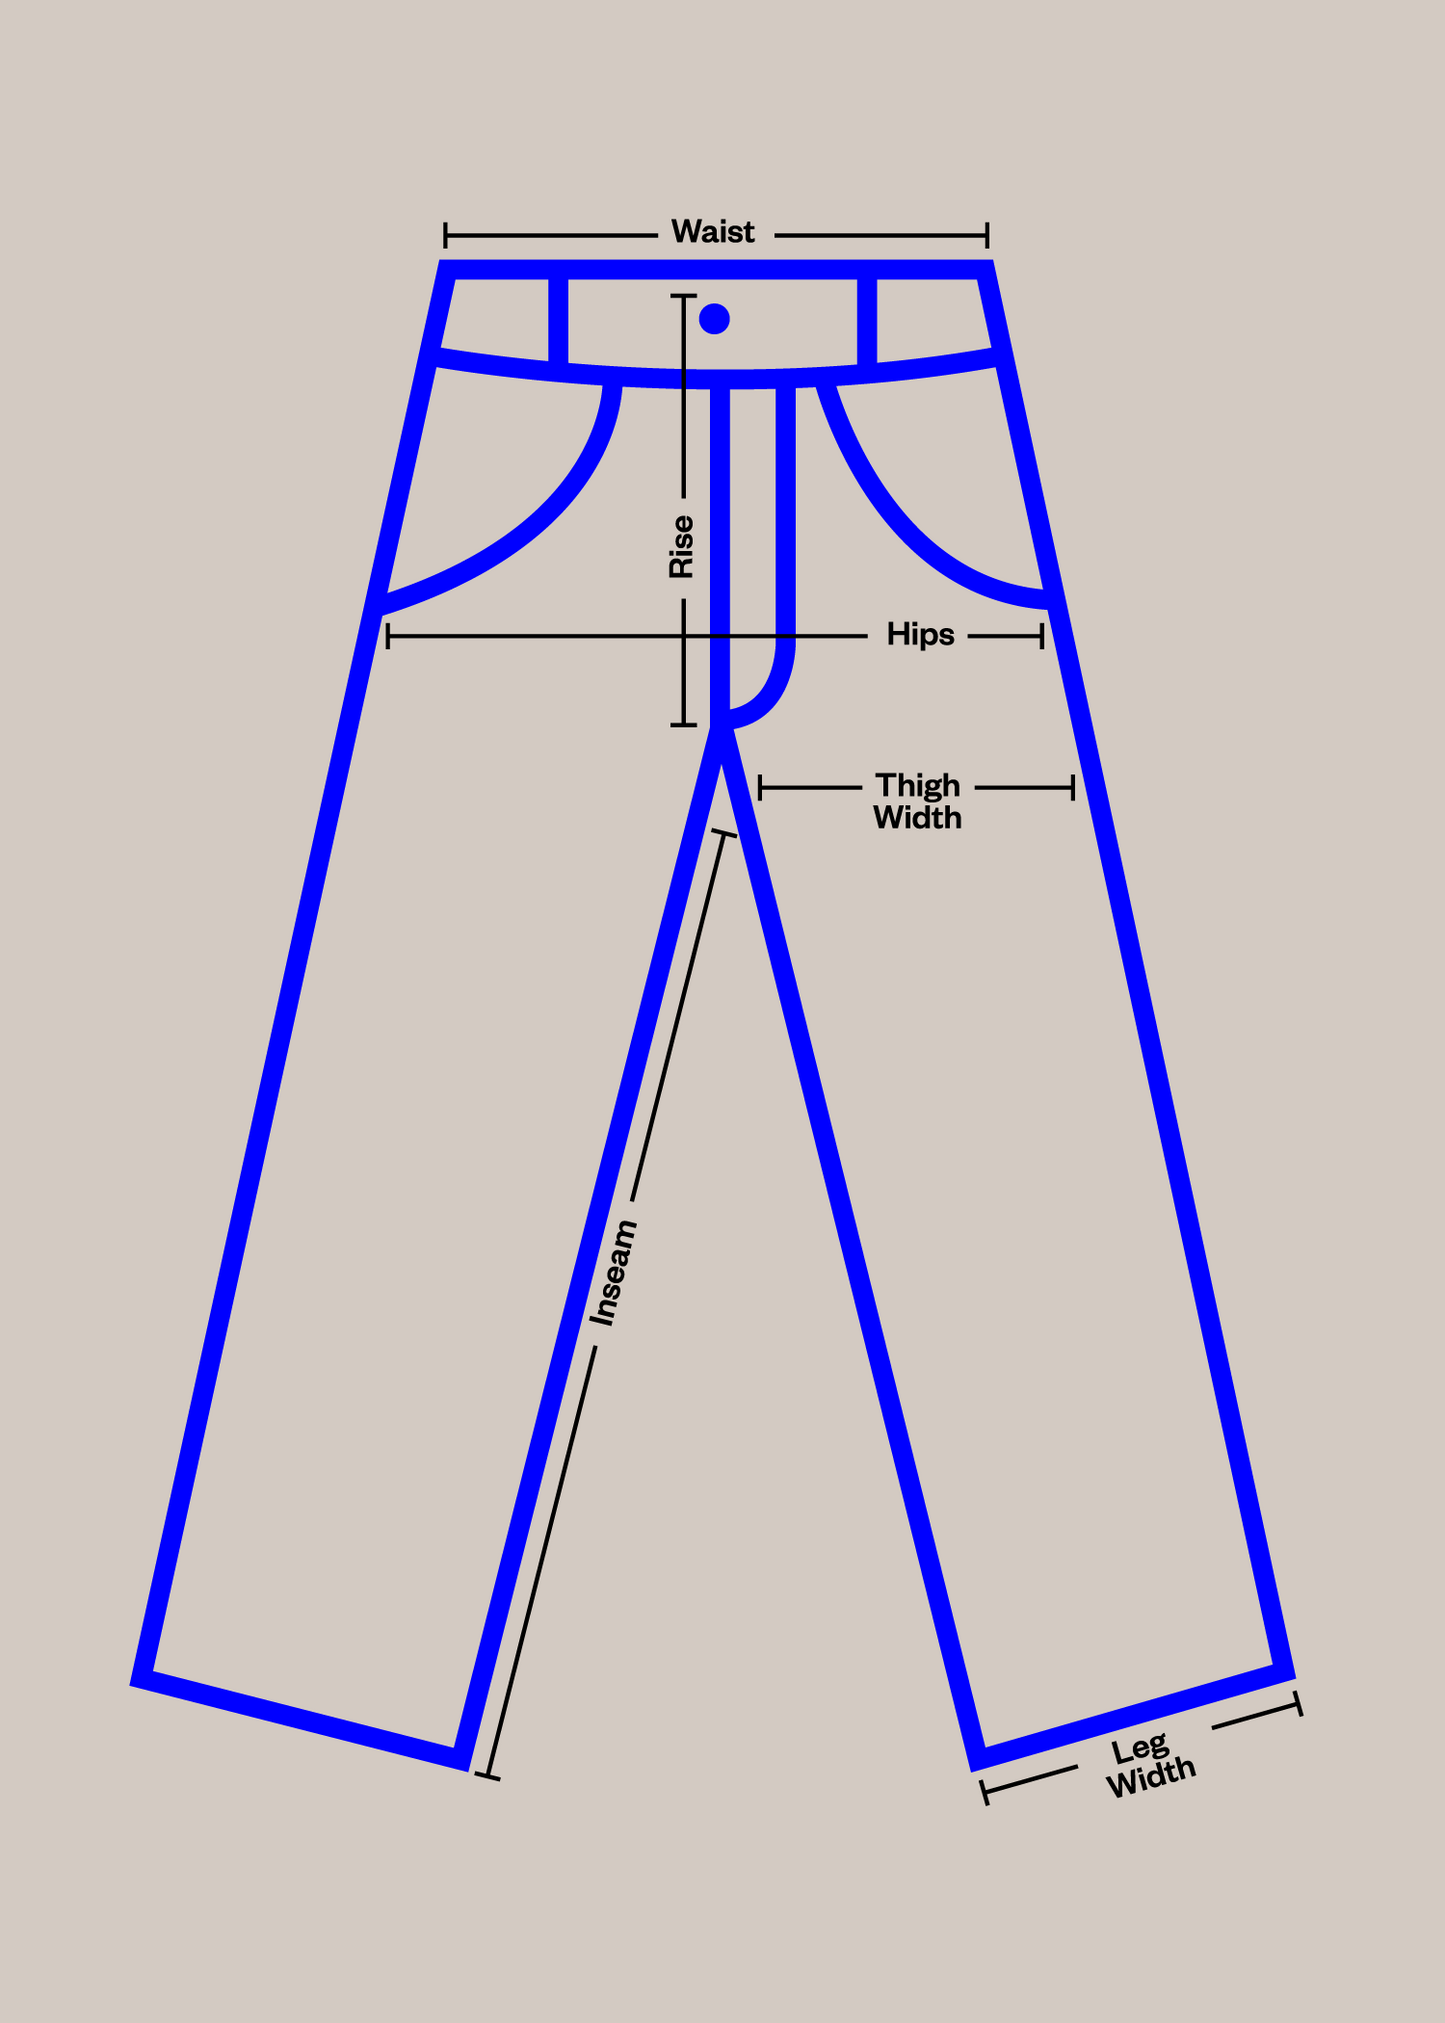 1980s European Workwear Chore Pants Size Women's 32 Men's 34